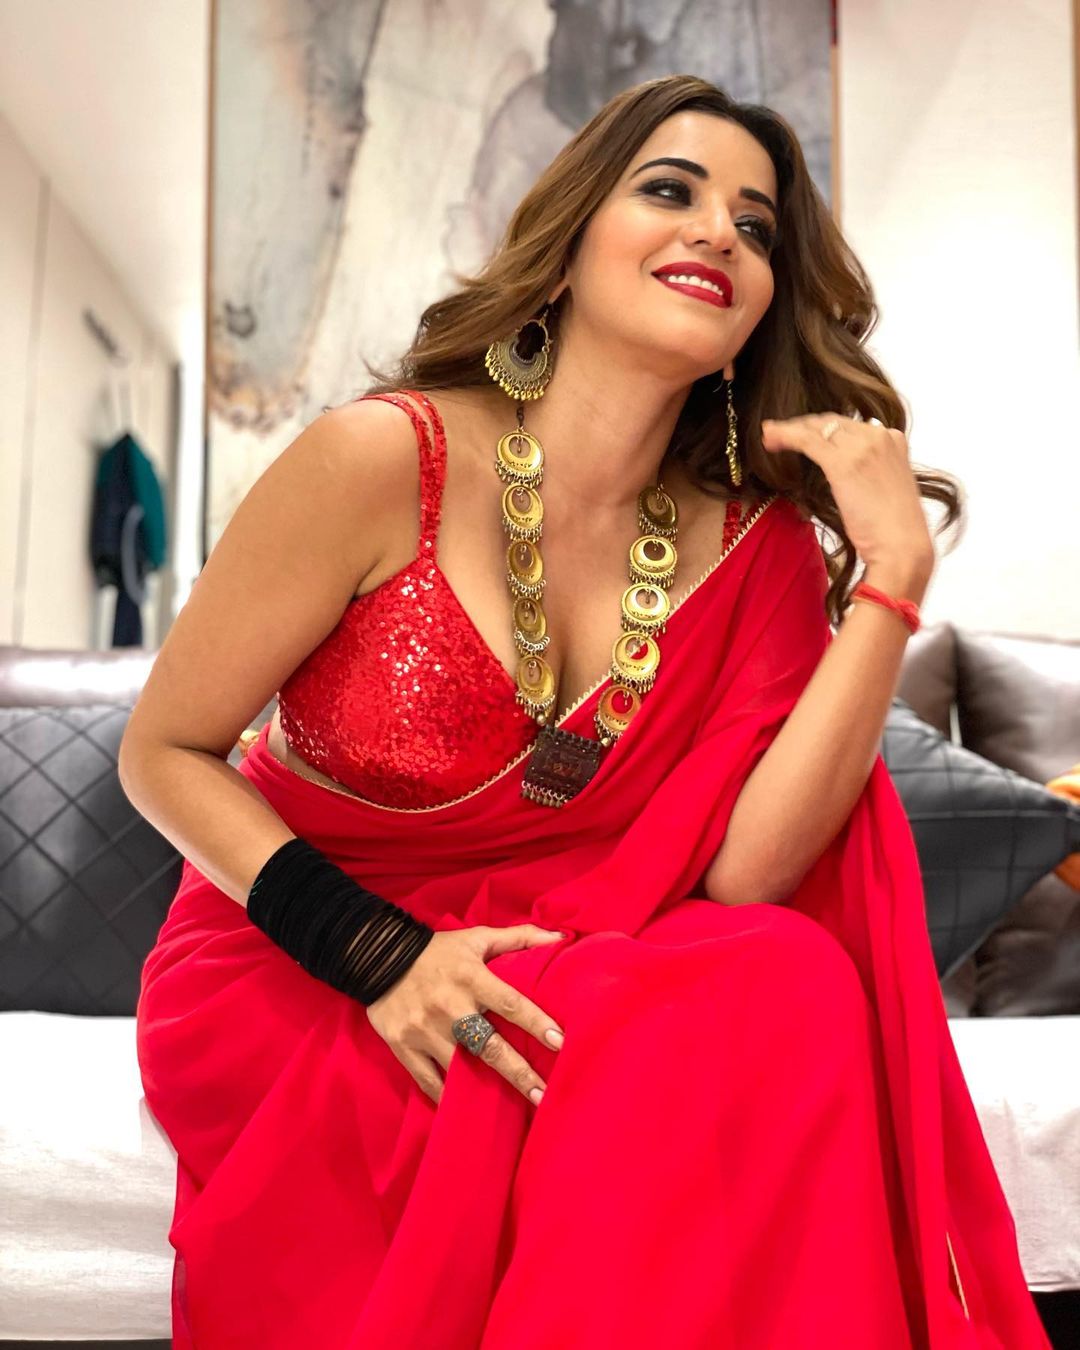 bhojpuri actress monalisa shares latest photos in red saree on instagram  see pics | लाल साड़ी में कहर ढा रही हैं Bhojpuri Actress मोनालिसा, तस्वीरों  से नहीं हटेंगी नजरें | Hindi News,